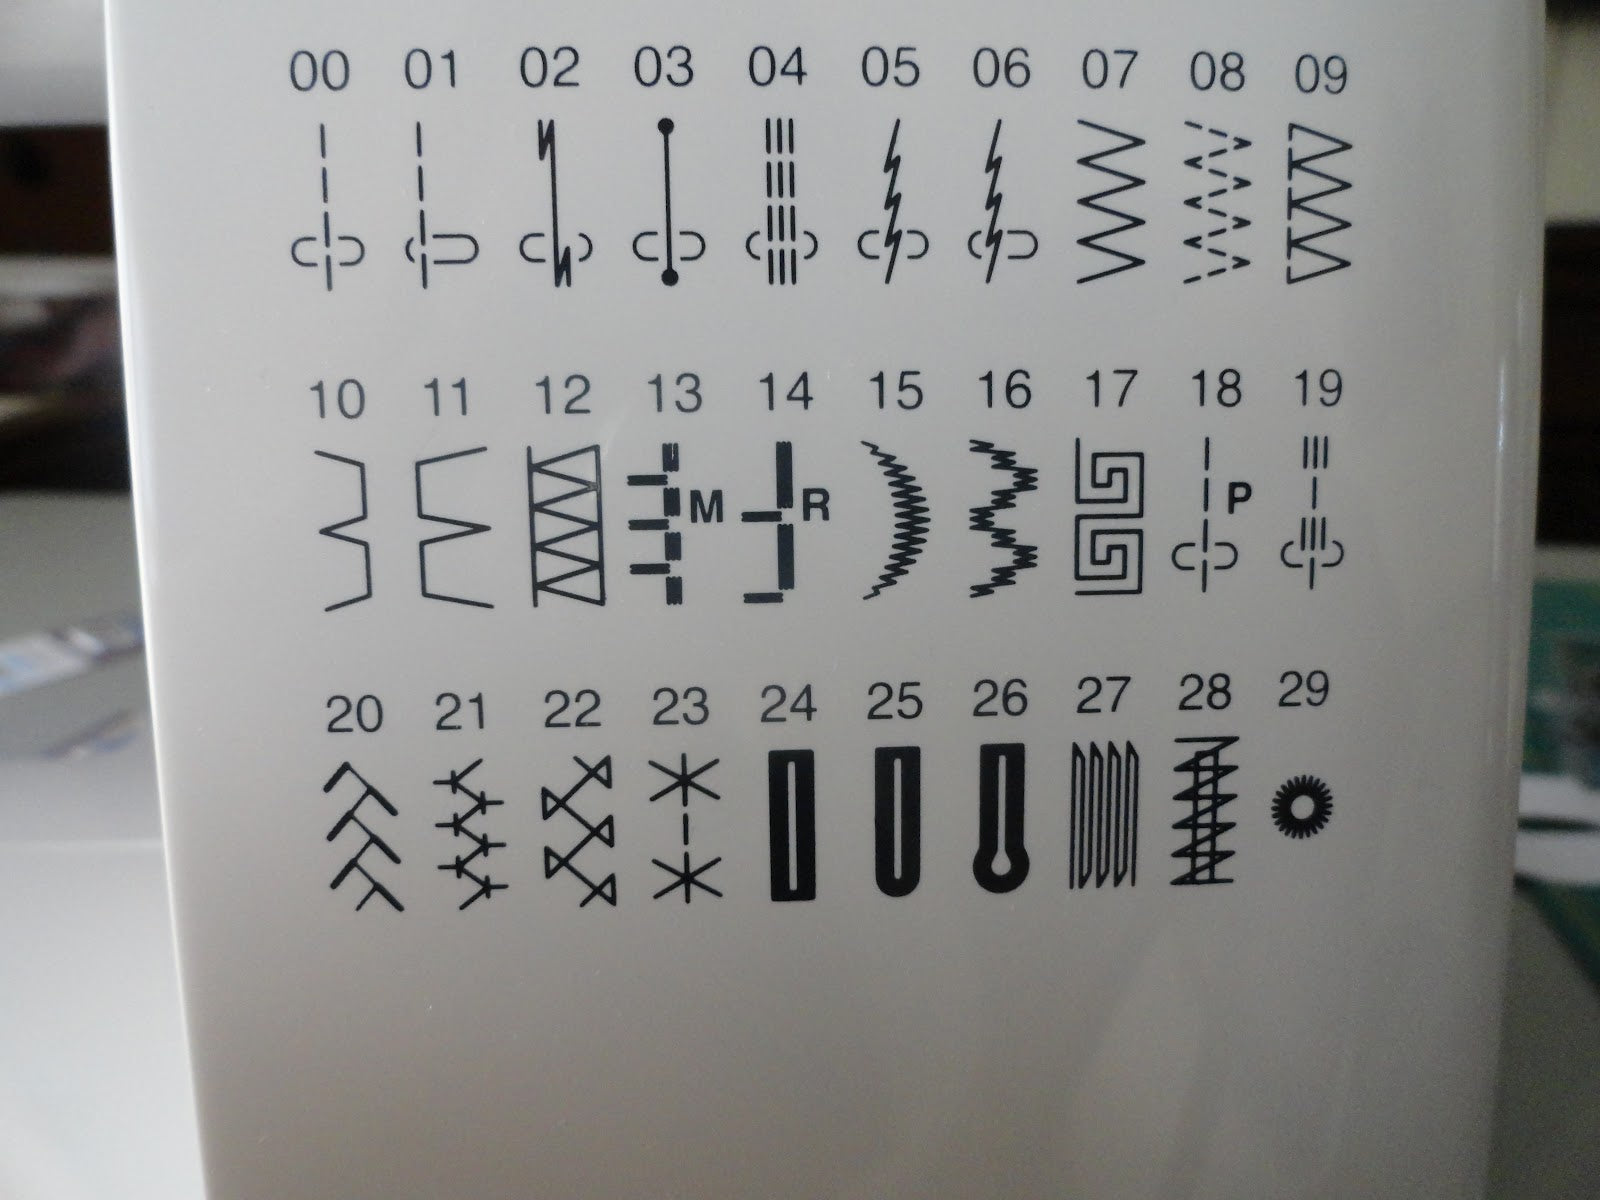 Hemstitch pattern on Sewing machine